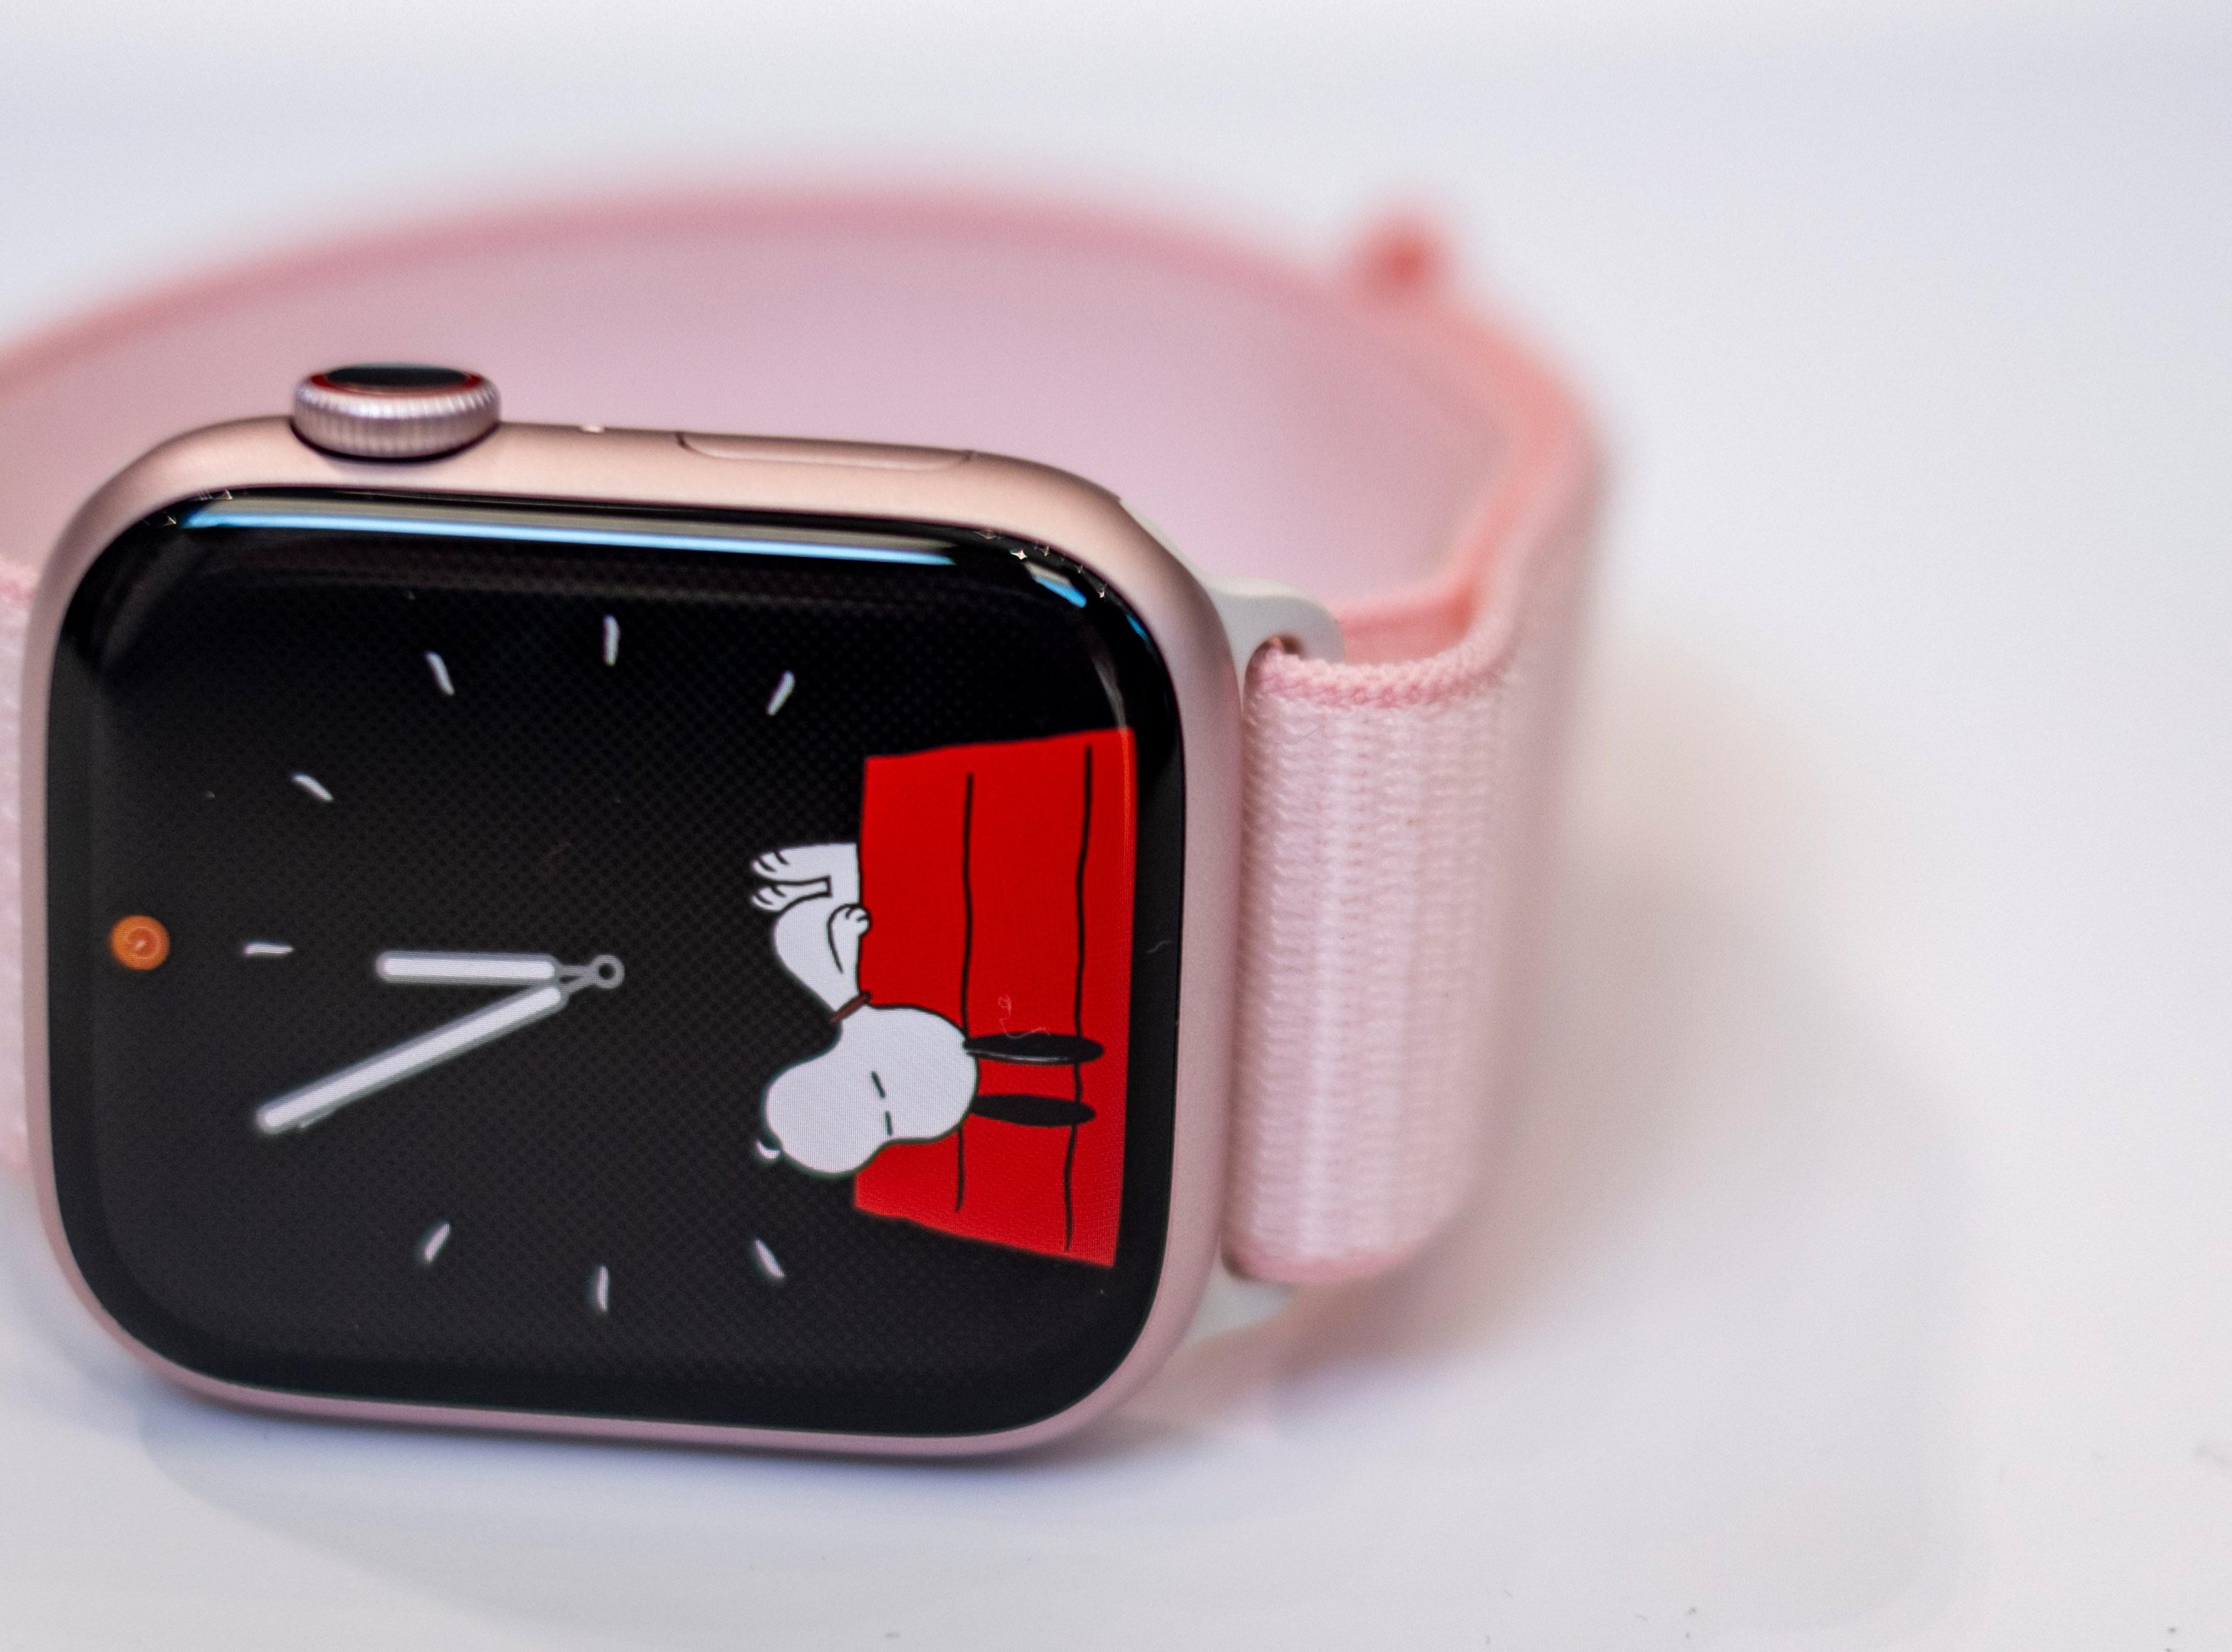 Tre små endringer som Apple Watch-eiere vil merke - Diskuter artikler  (Tek.no) - Diskusjon.no